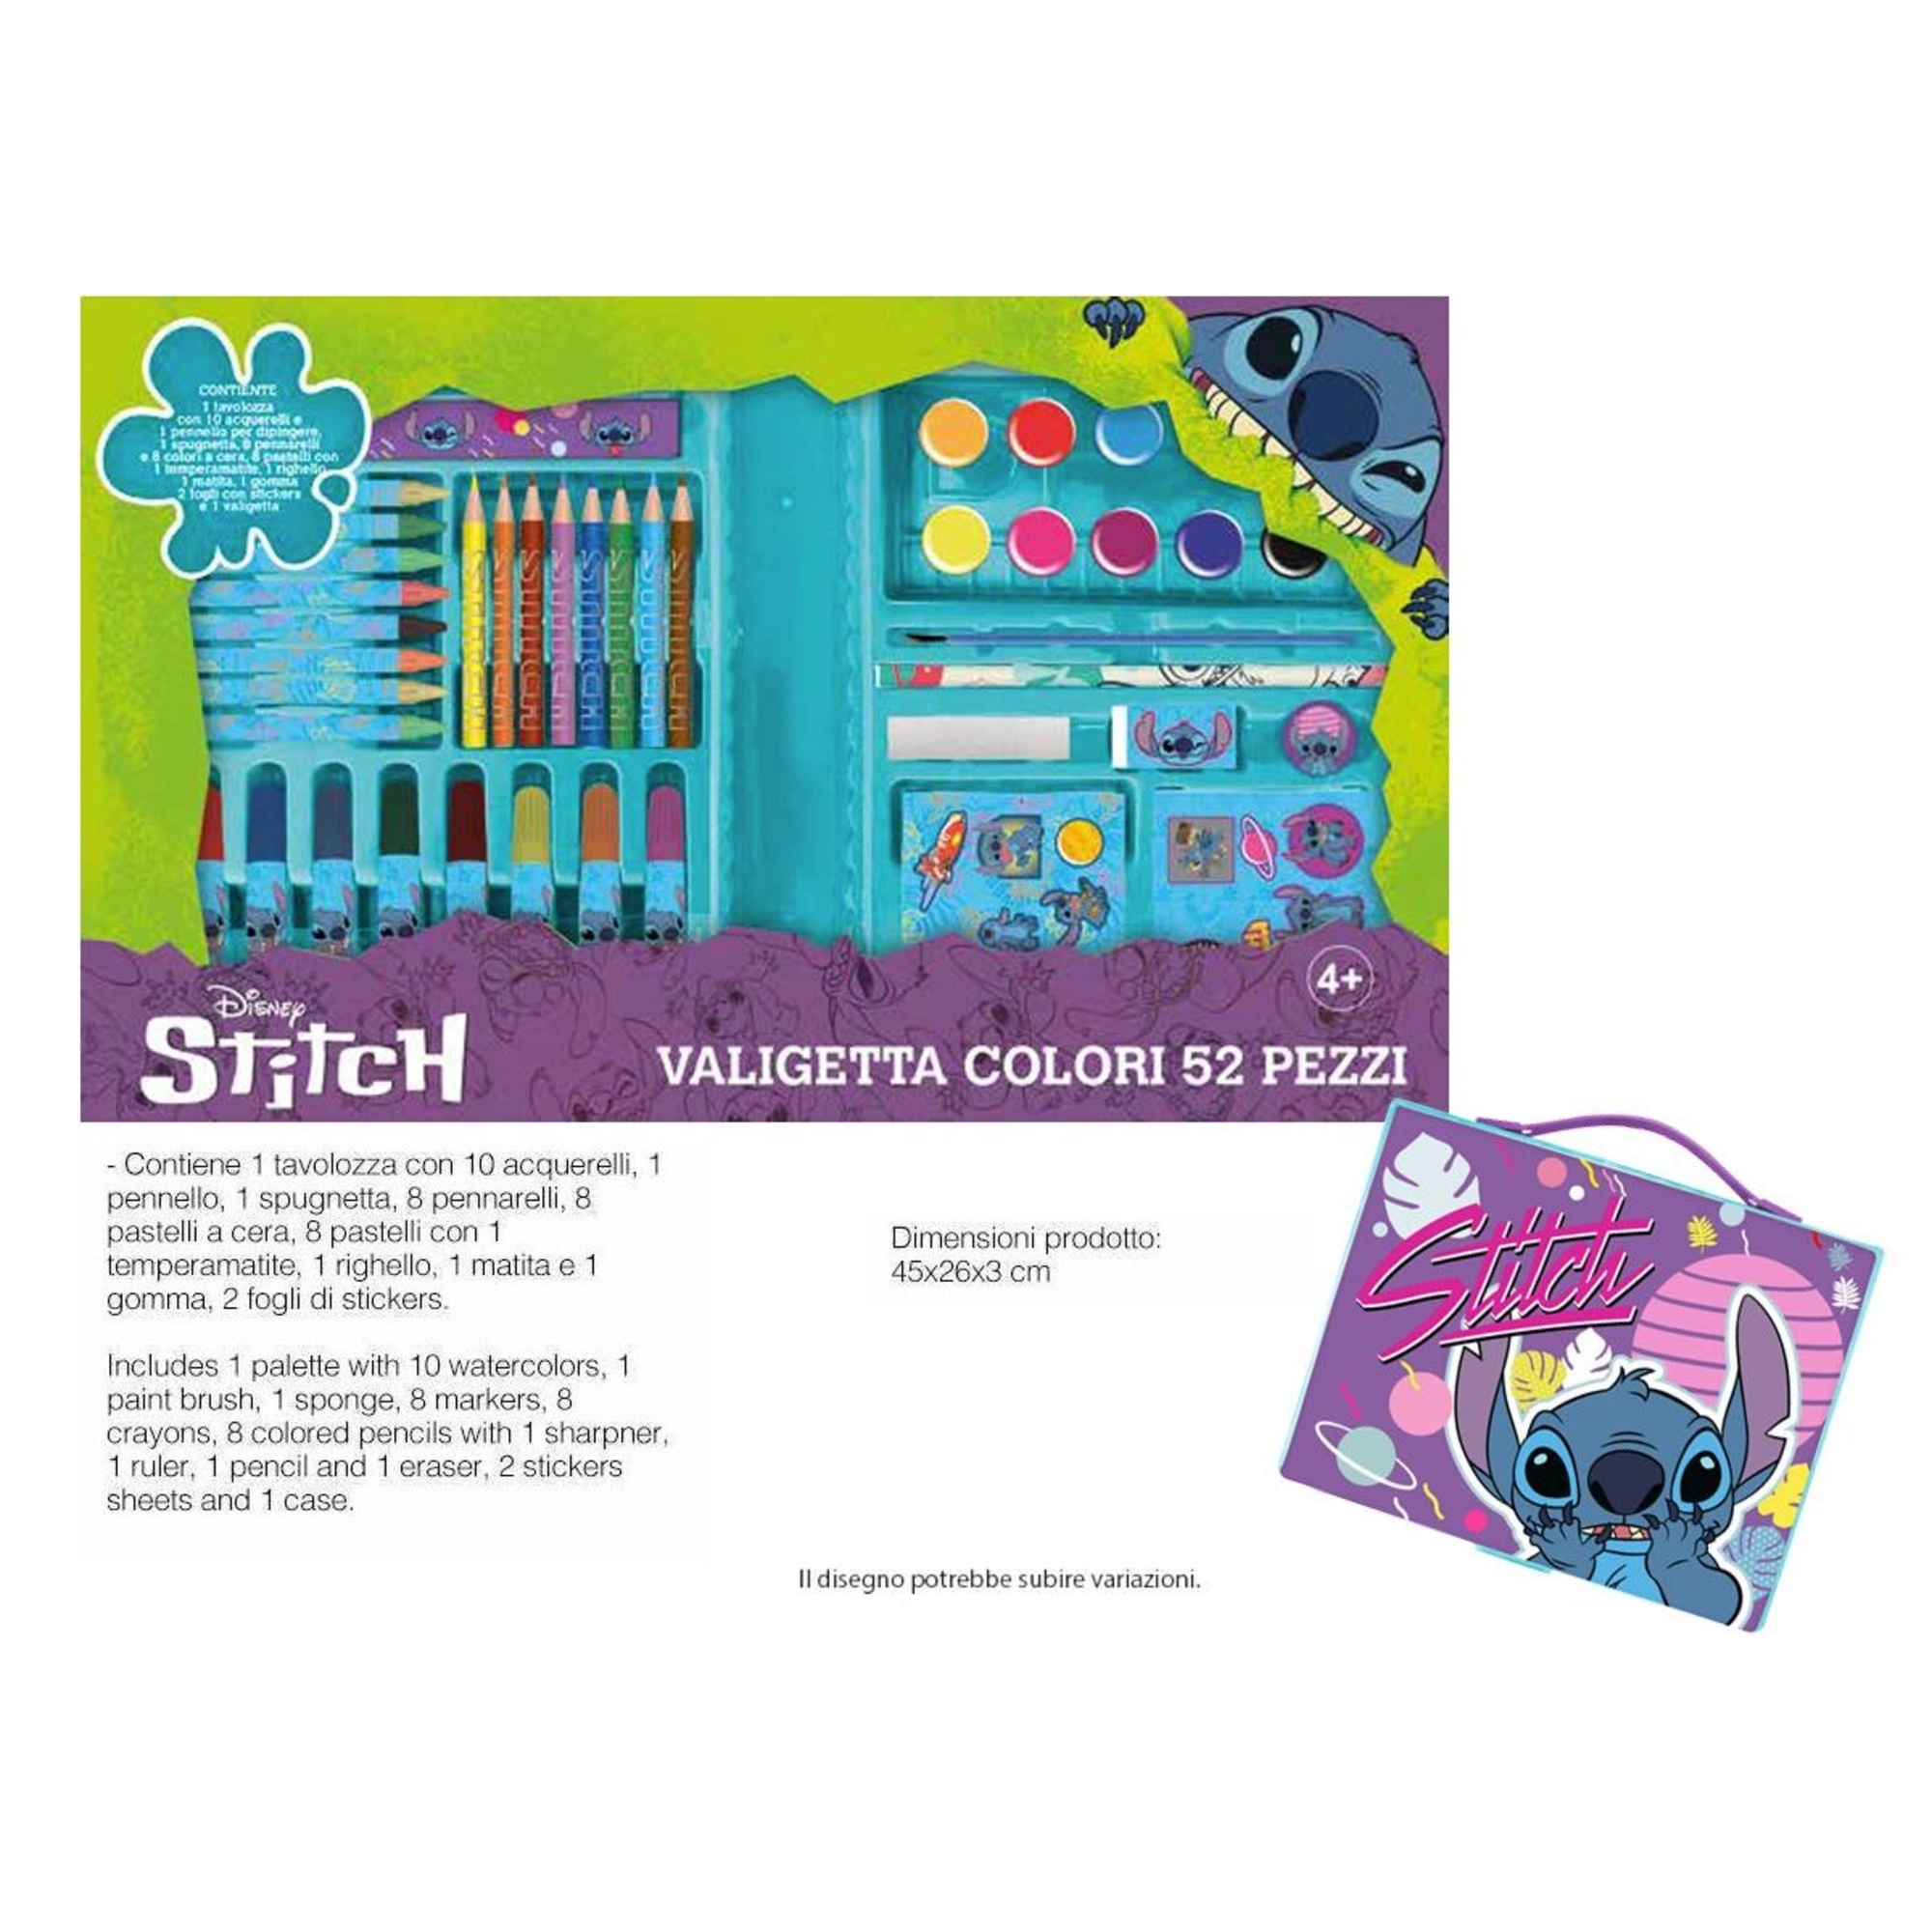 Valigetta di stitch con matite e pastelli colorati per il disegno - Disney Stitch